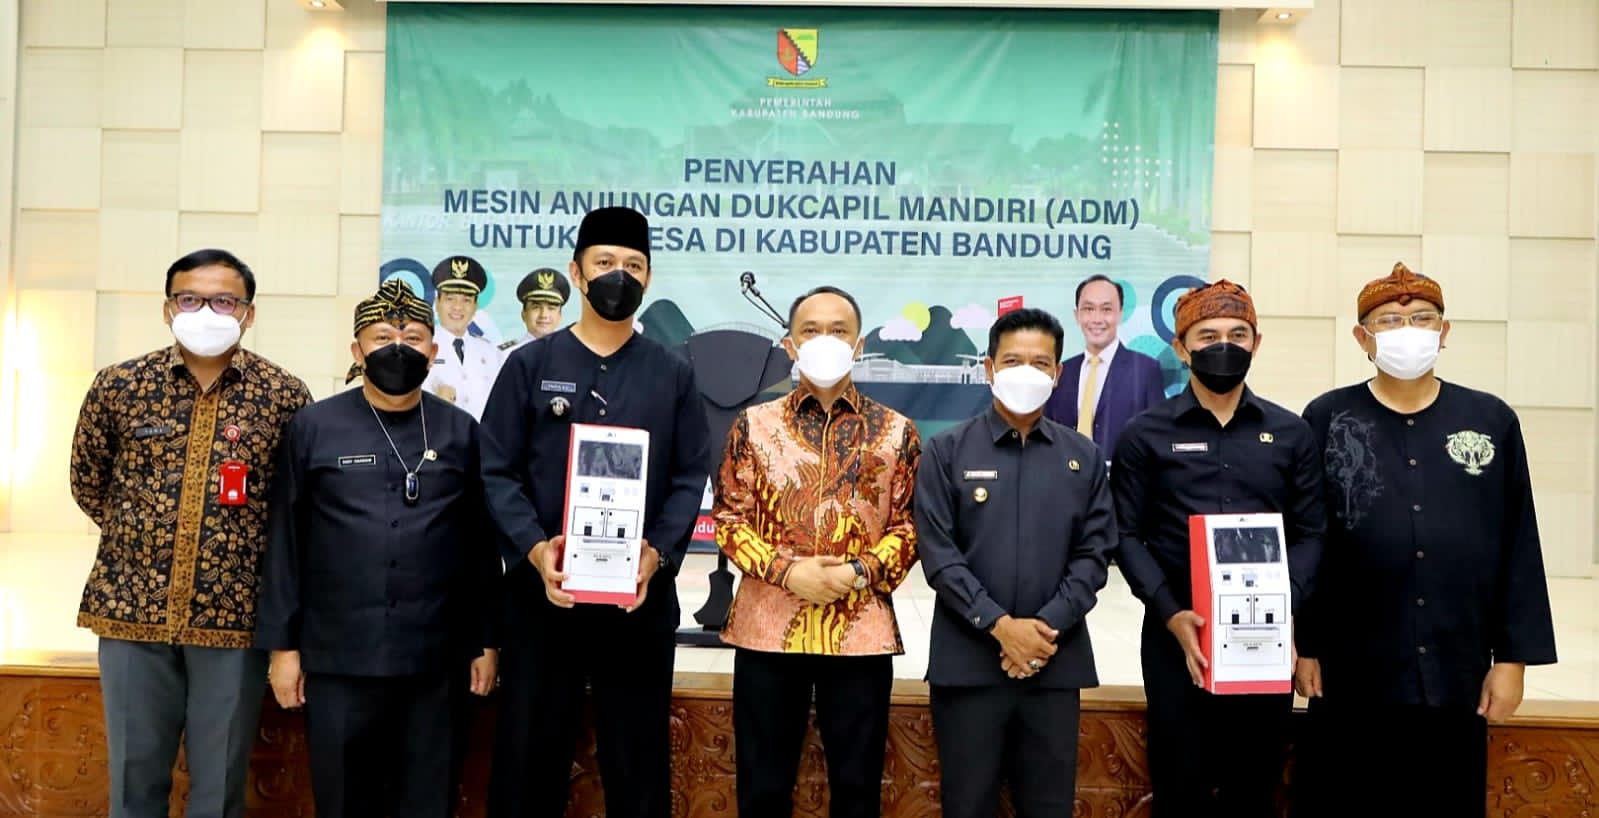 Dirjen Zudan : Pertama kali di Indonesia, Bupati Bandung Bagikan 31 Mesin ADM ke Desa-desa